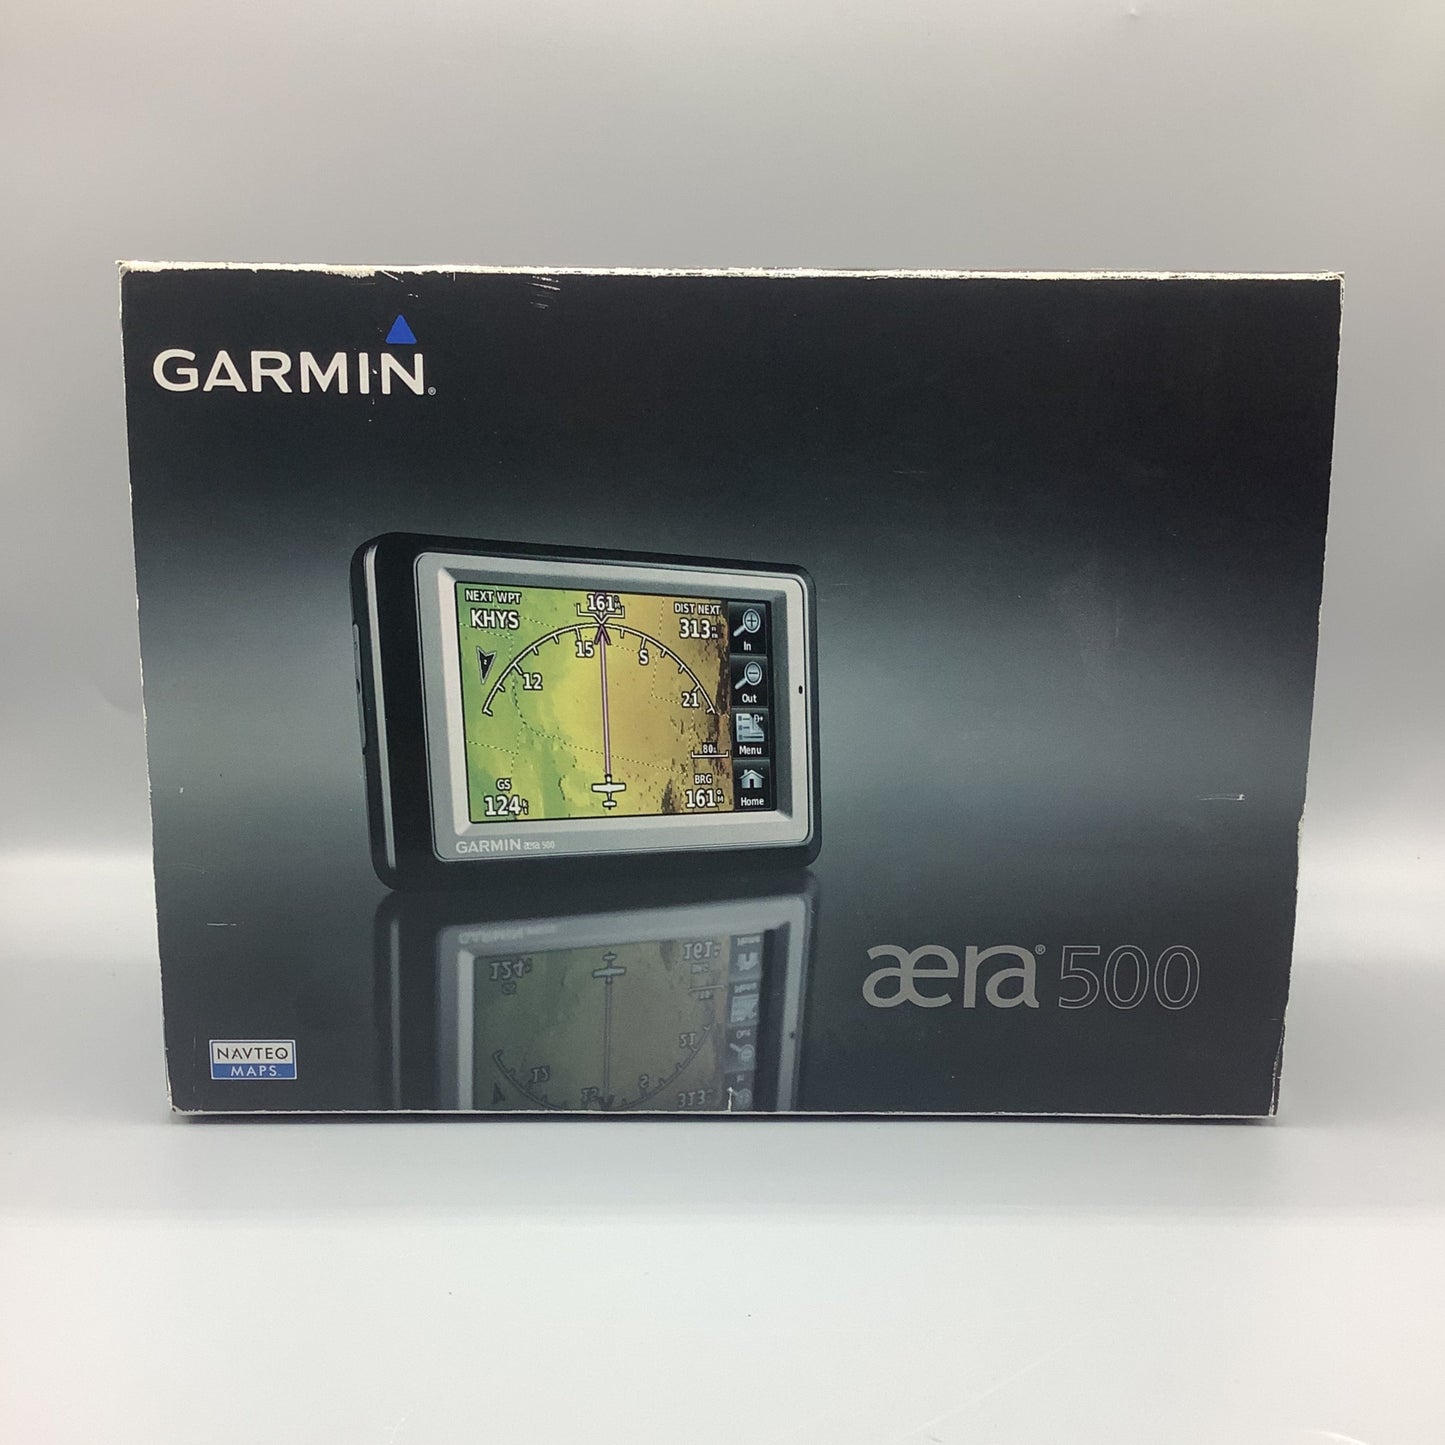 Garmin Aera 500 Americas Kit - Part Number: 010-00836-00